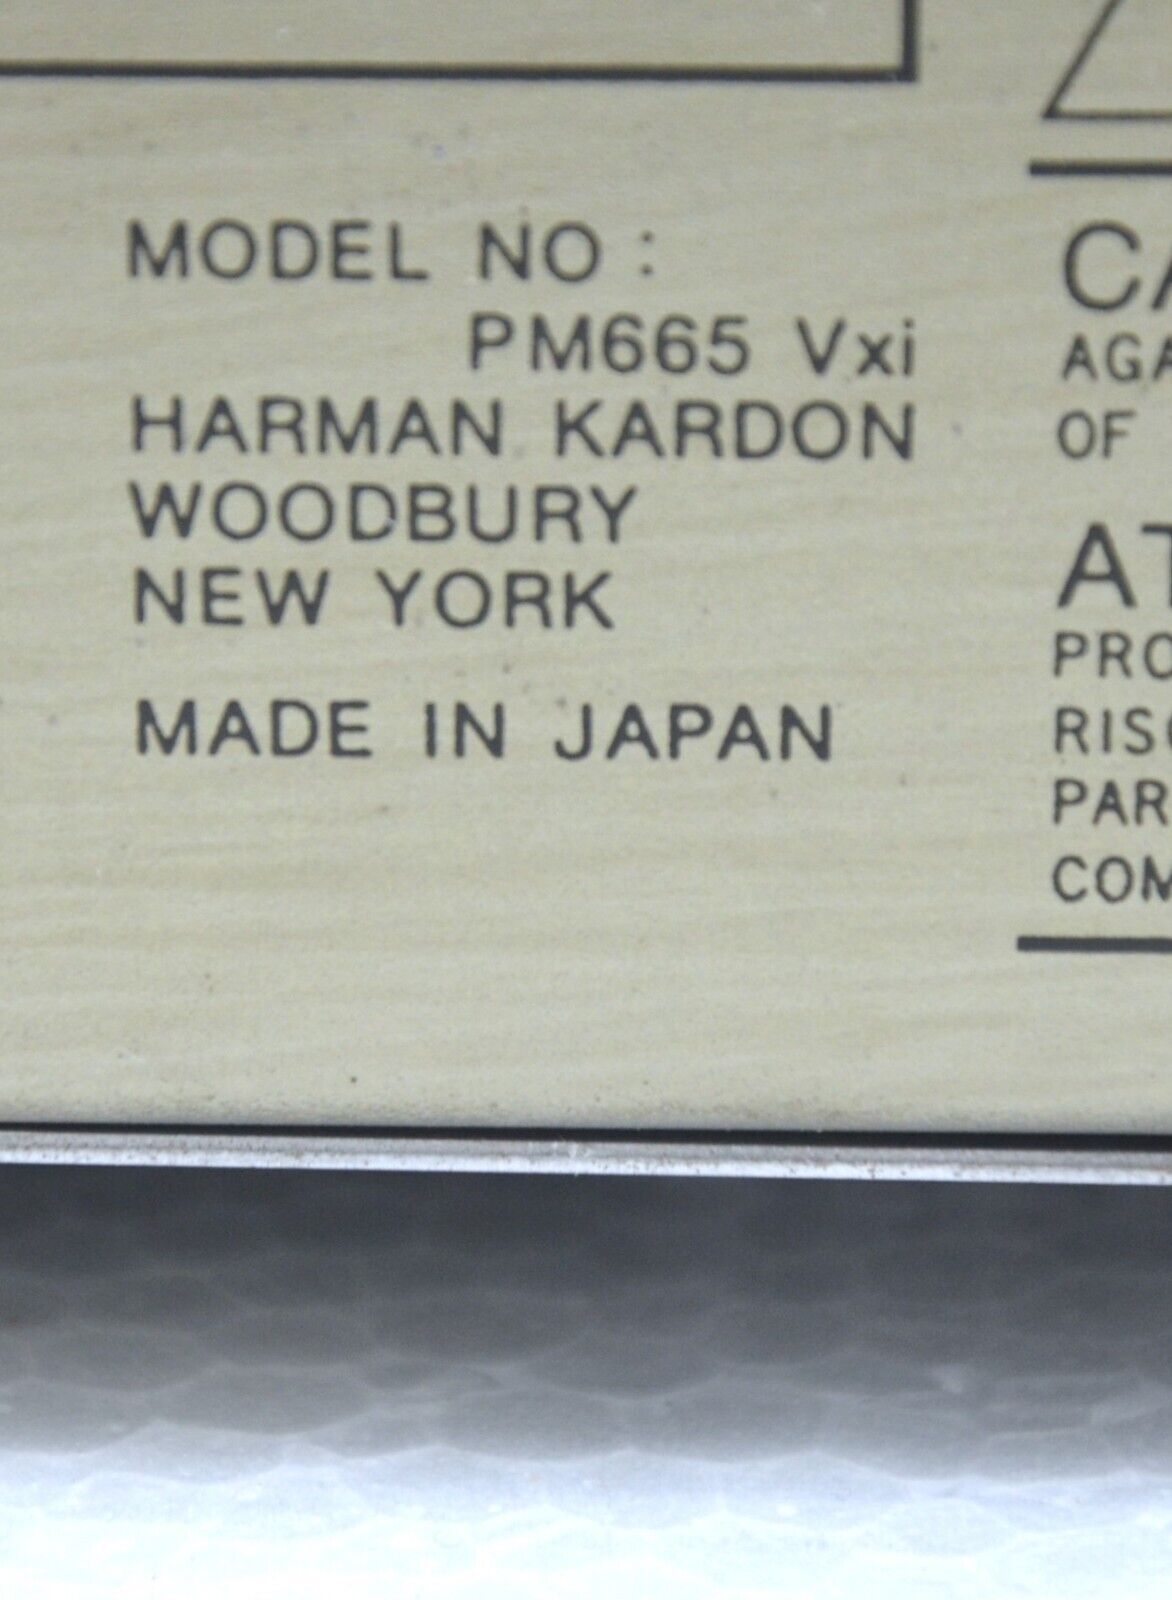 Harman Kardon PM665 Vxi Stereo 2 Kanäle Verstärker  (283)